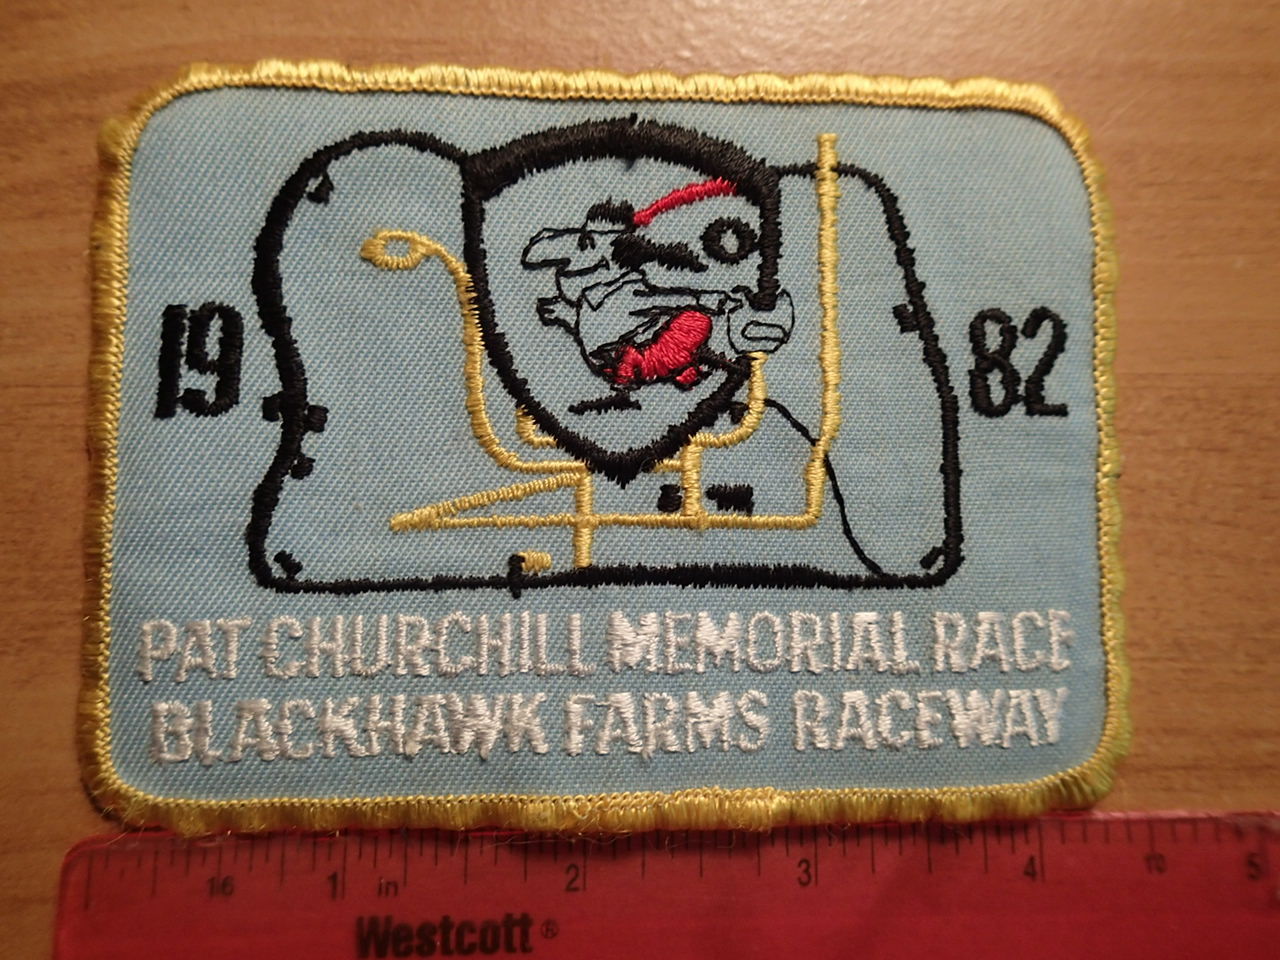 VINTAGE SCCA PATCH-Blackhawk Farms Raceway-1982-Pat Churchill Memorial Race